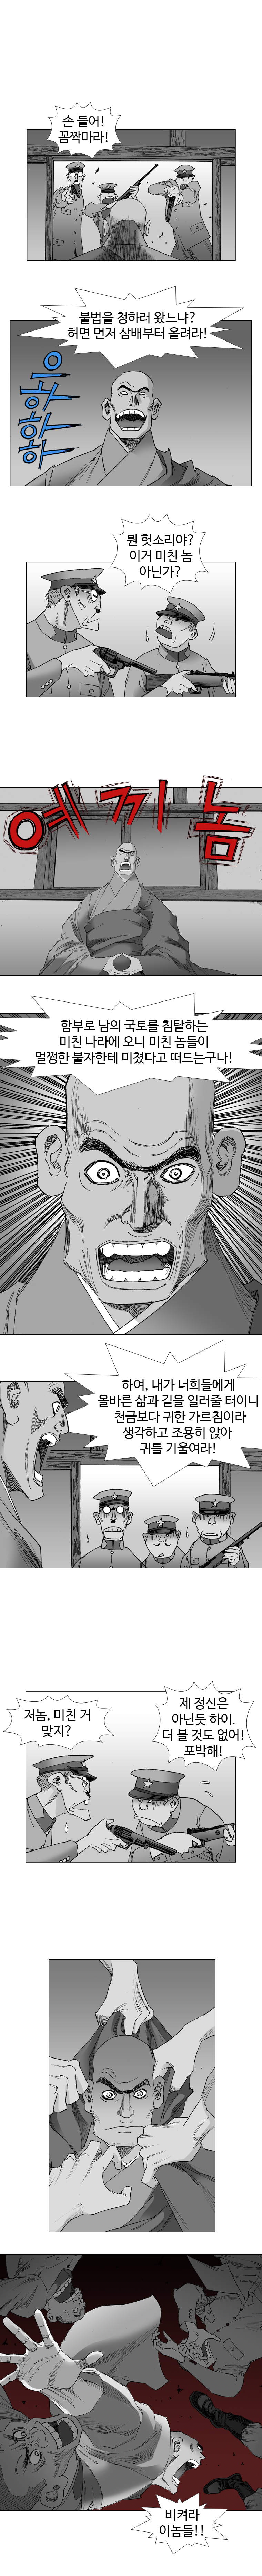 웹툰 백초월 3화-18